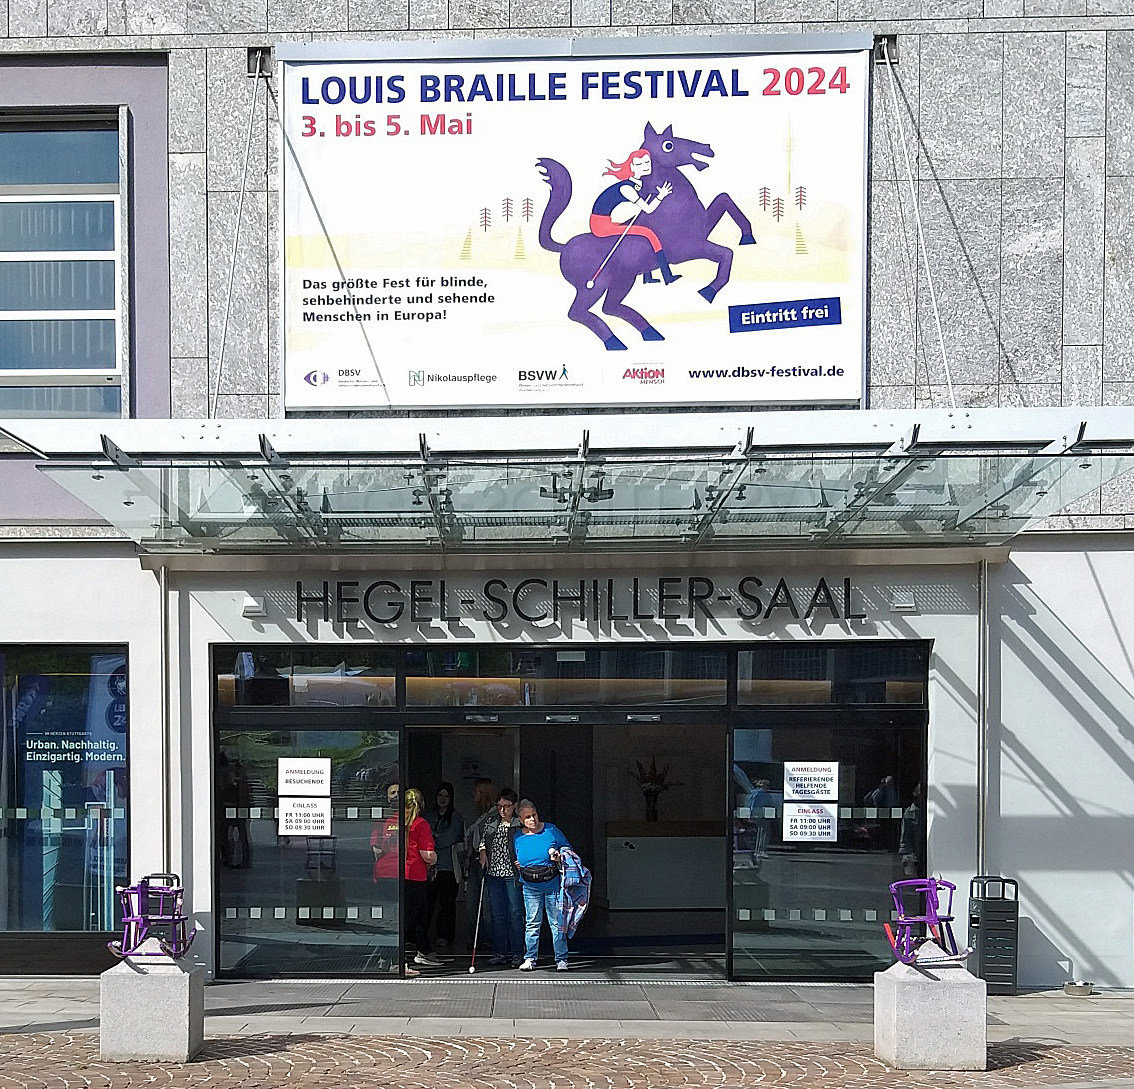 Eine großer Eingang mit Überdachung, davor links und rechts zwei lilafarbene Schaukelpferde, darüber ein großes Plakat "Louis Braille Festival 2024 mit lila Rössle und Reiterin